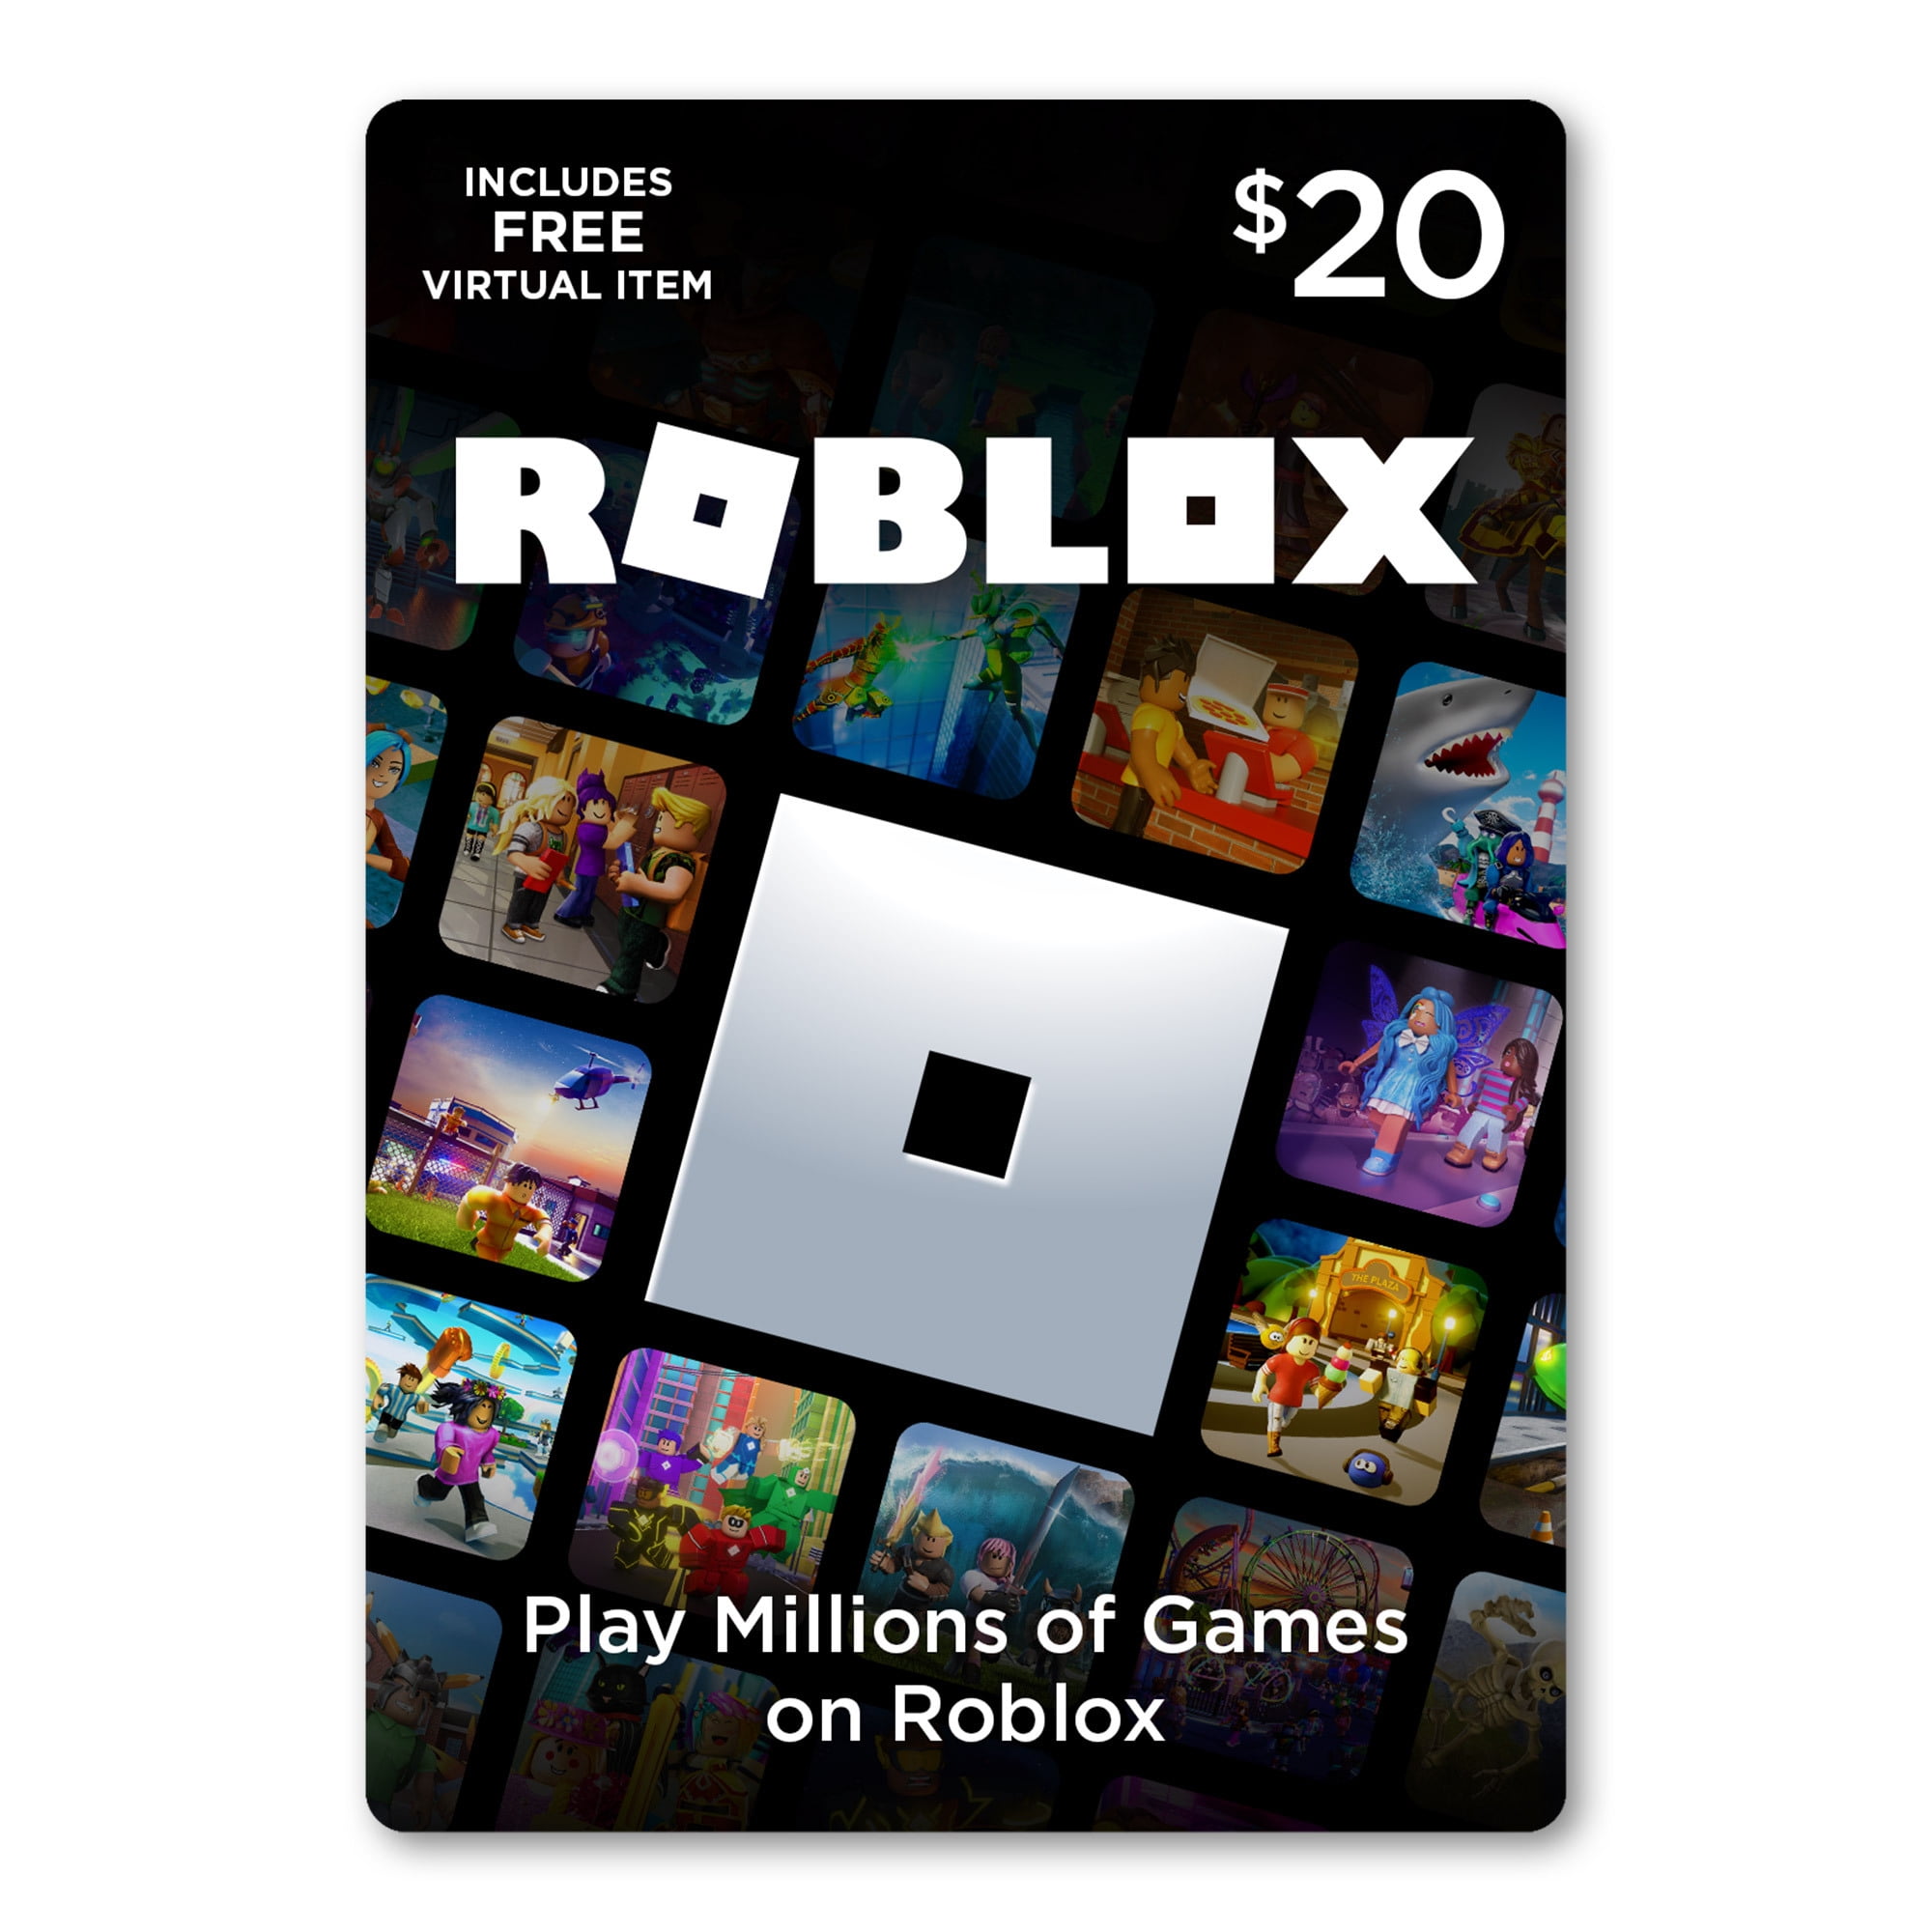 Roblox 20 Digital Gift Card Includes Exclusive Virtual Item Digital Download Walmart Com Walmart Com